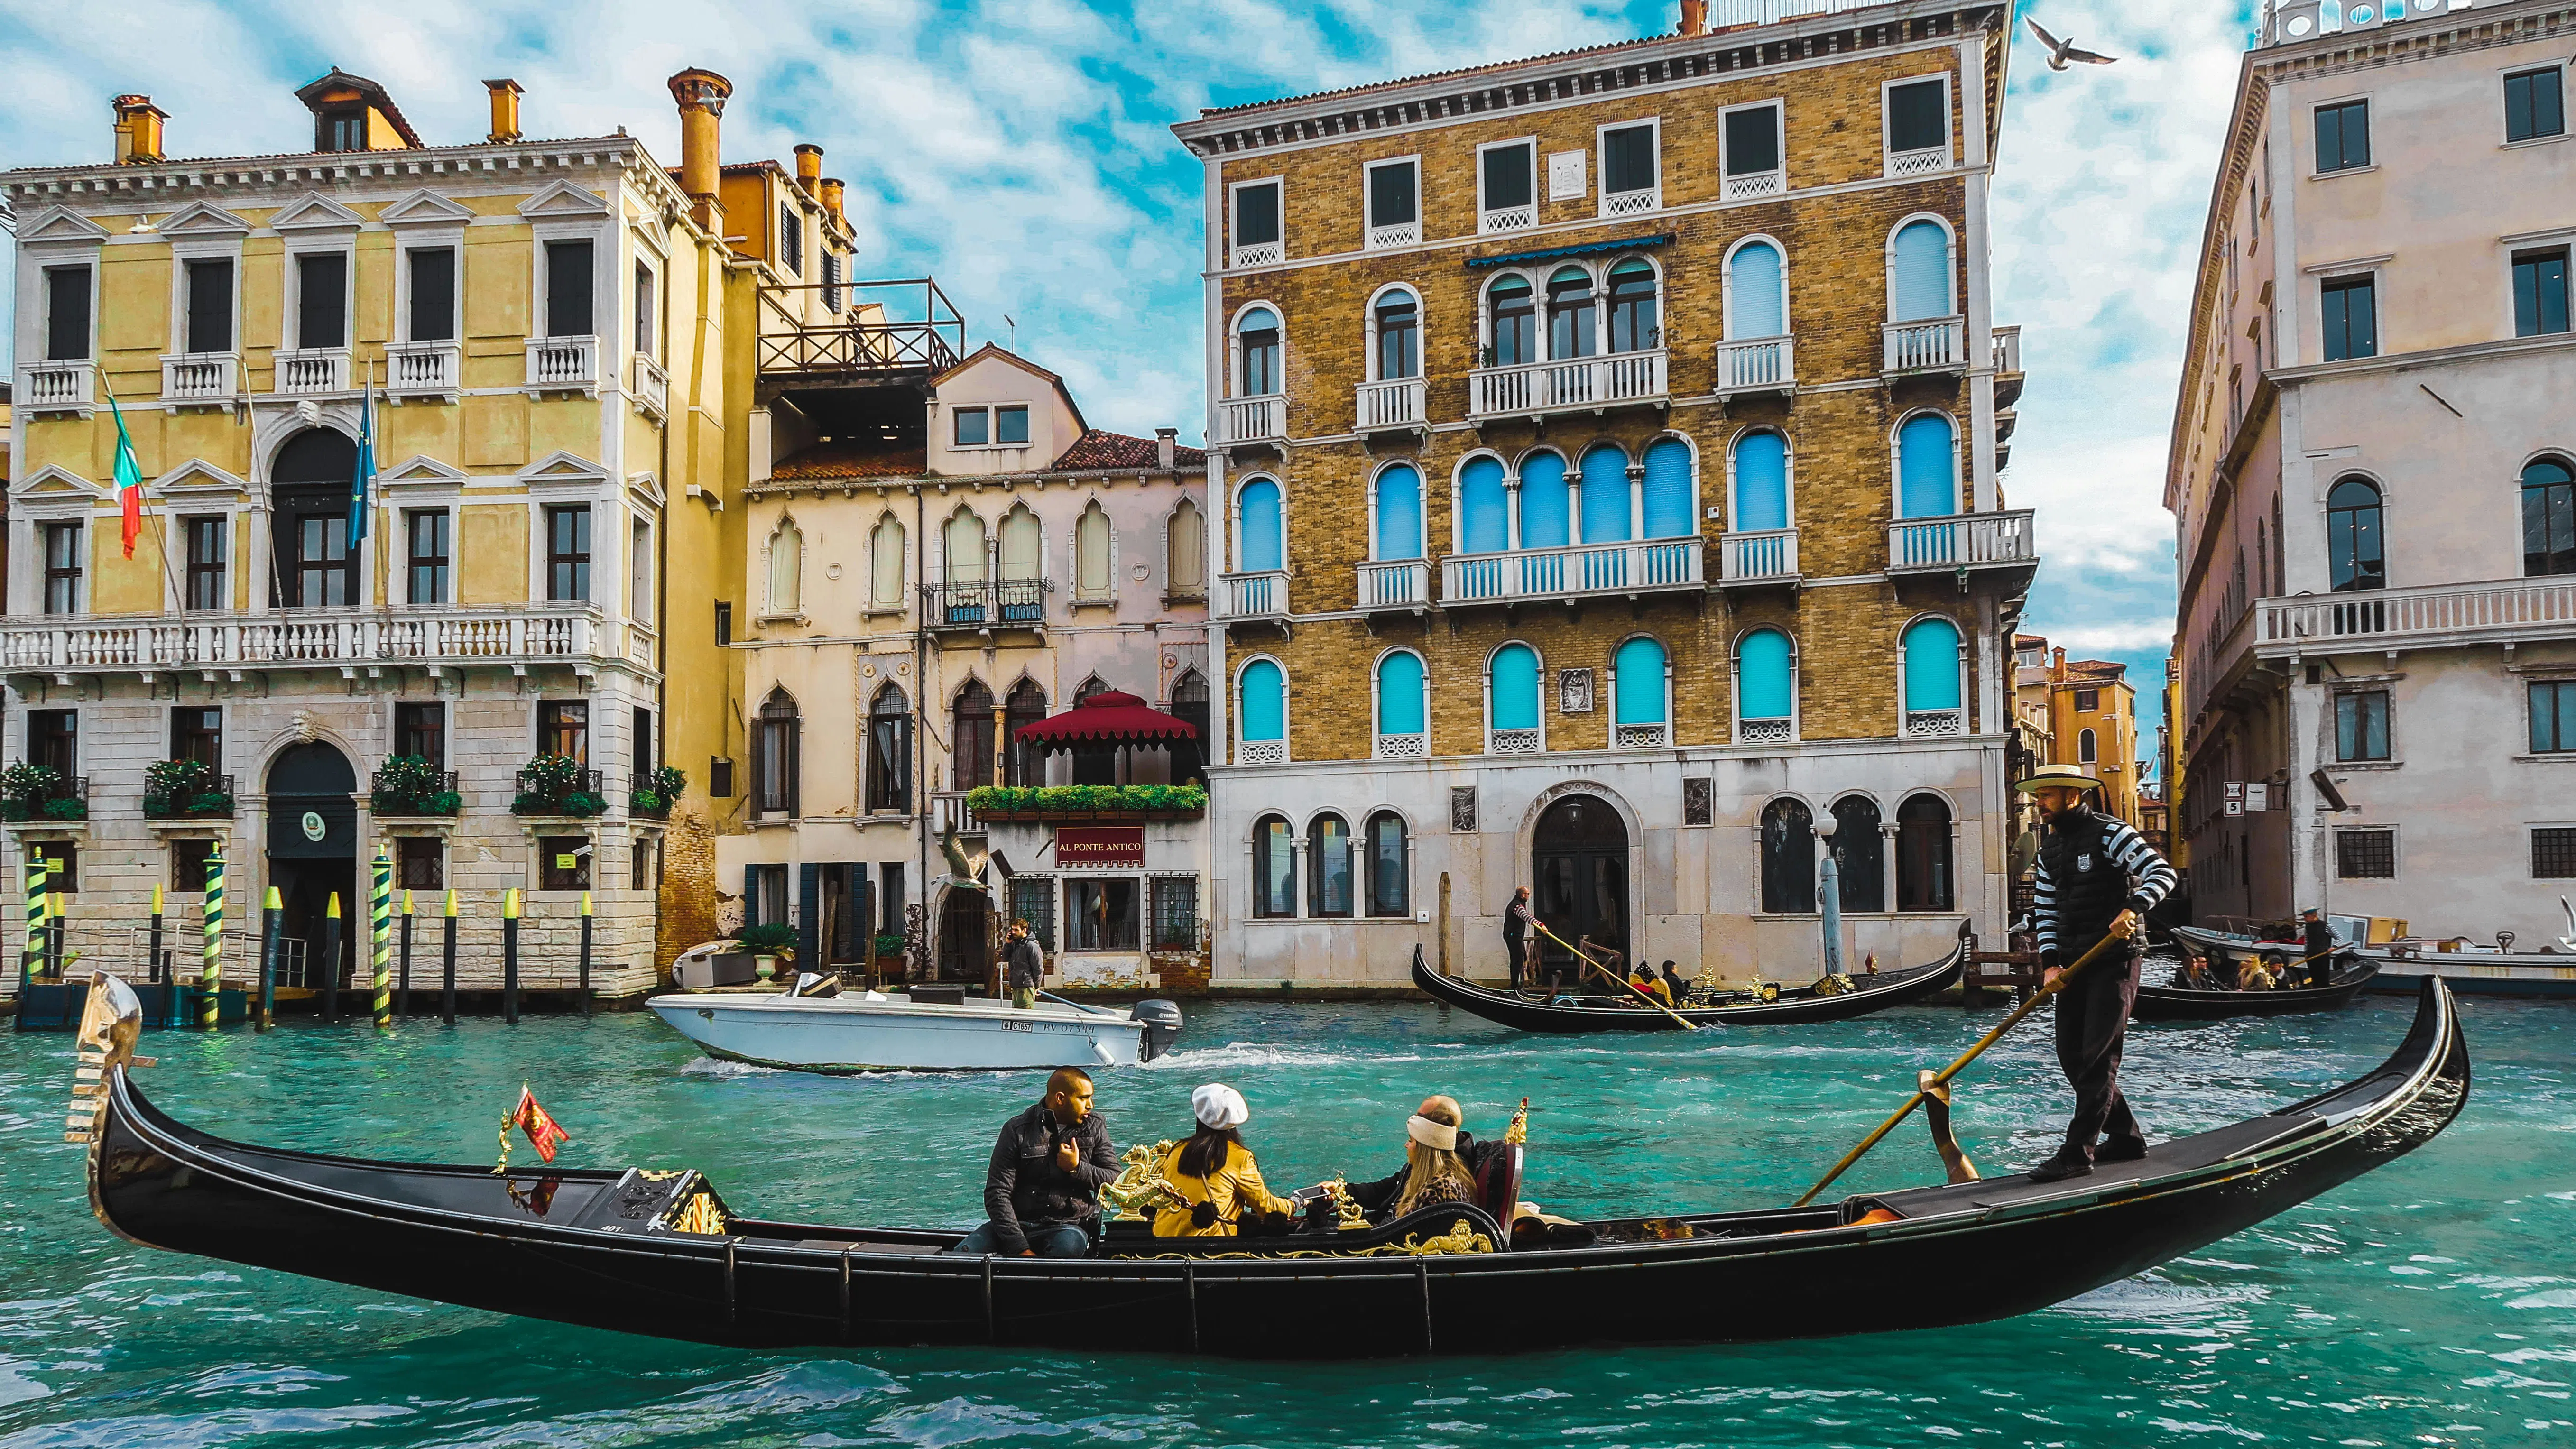 Венеция спечели 1 милион евро в първите 11 дни с такса за еднодневни посетители